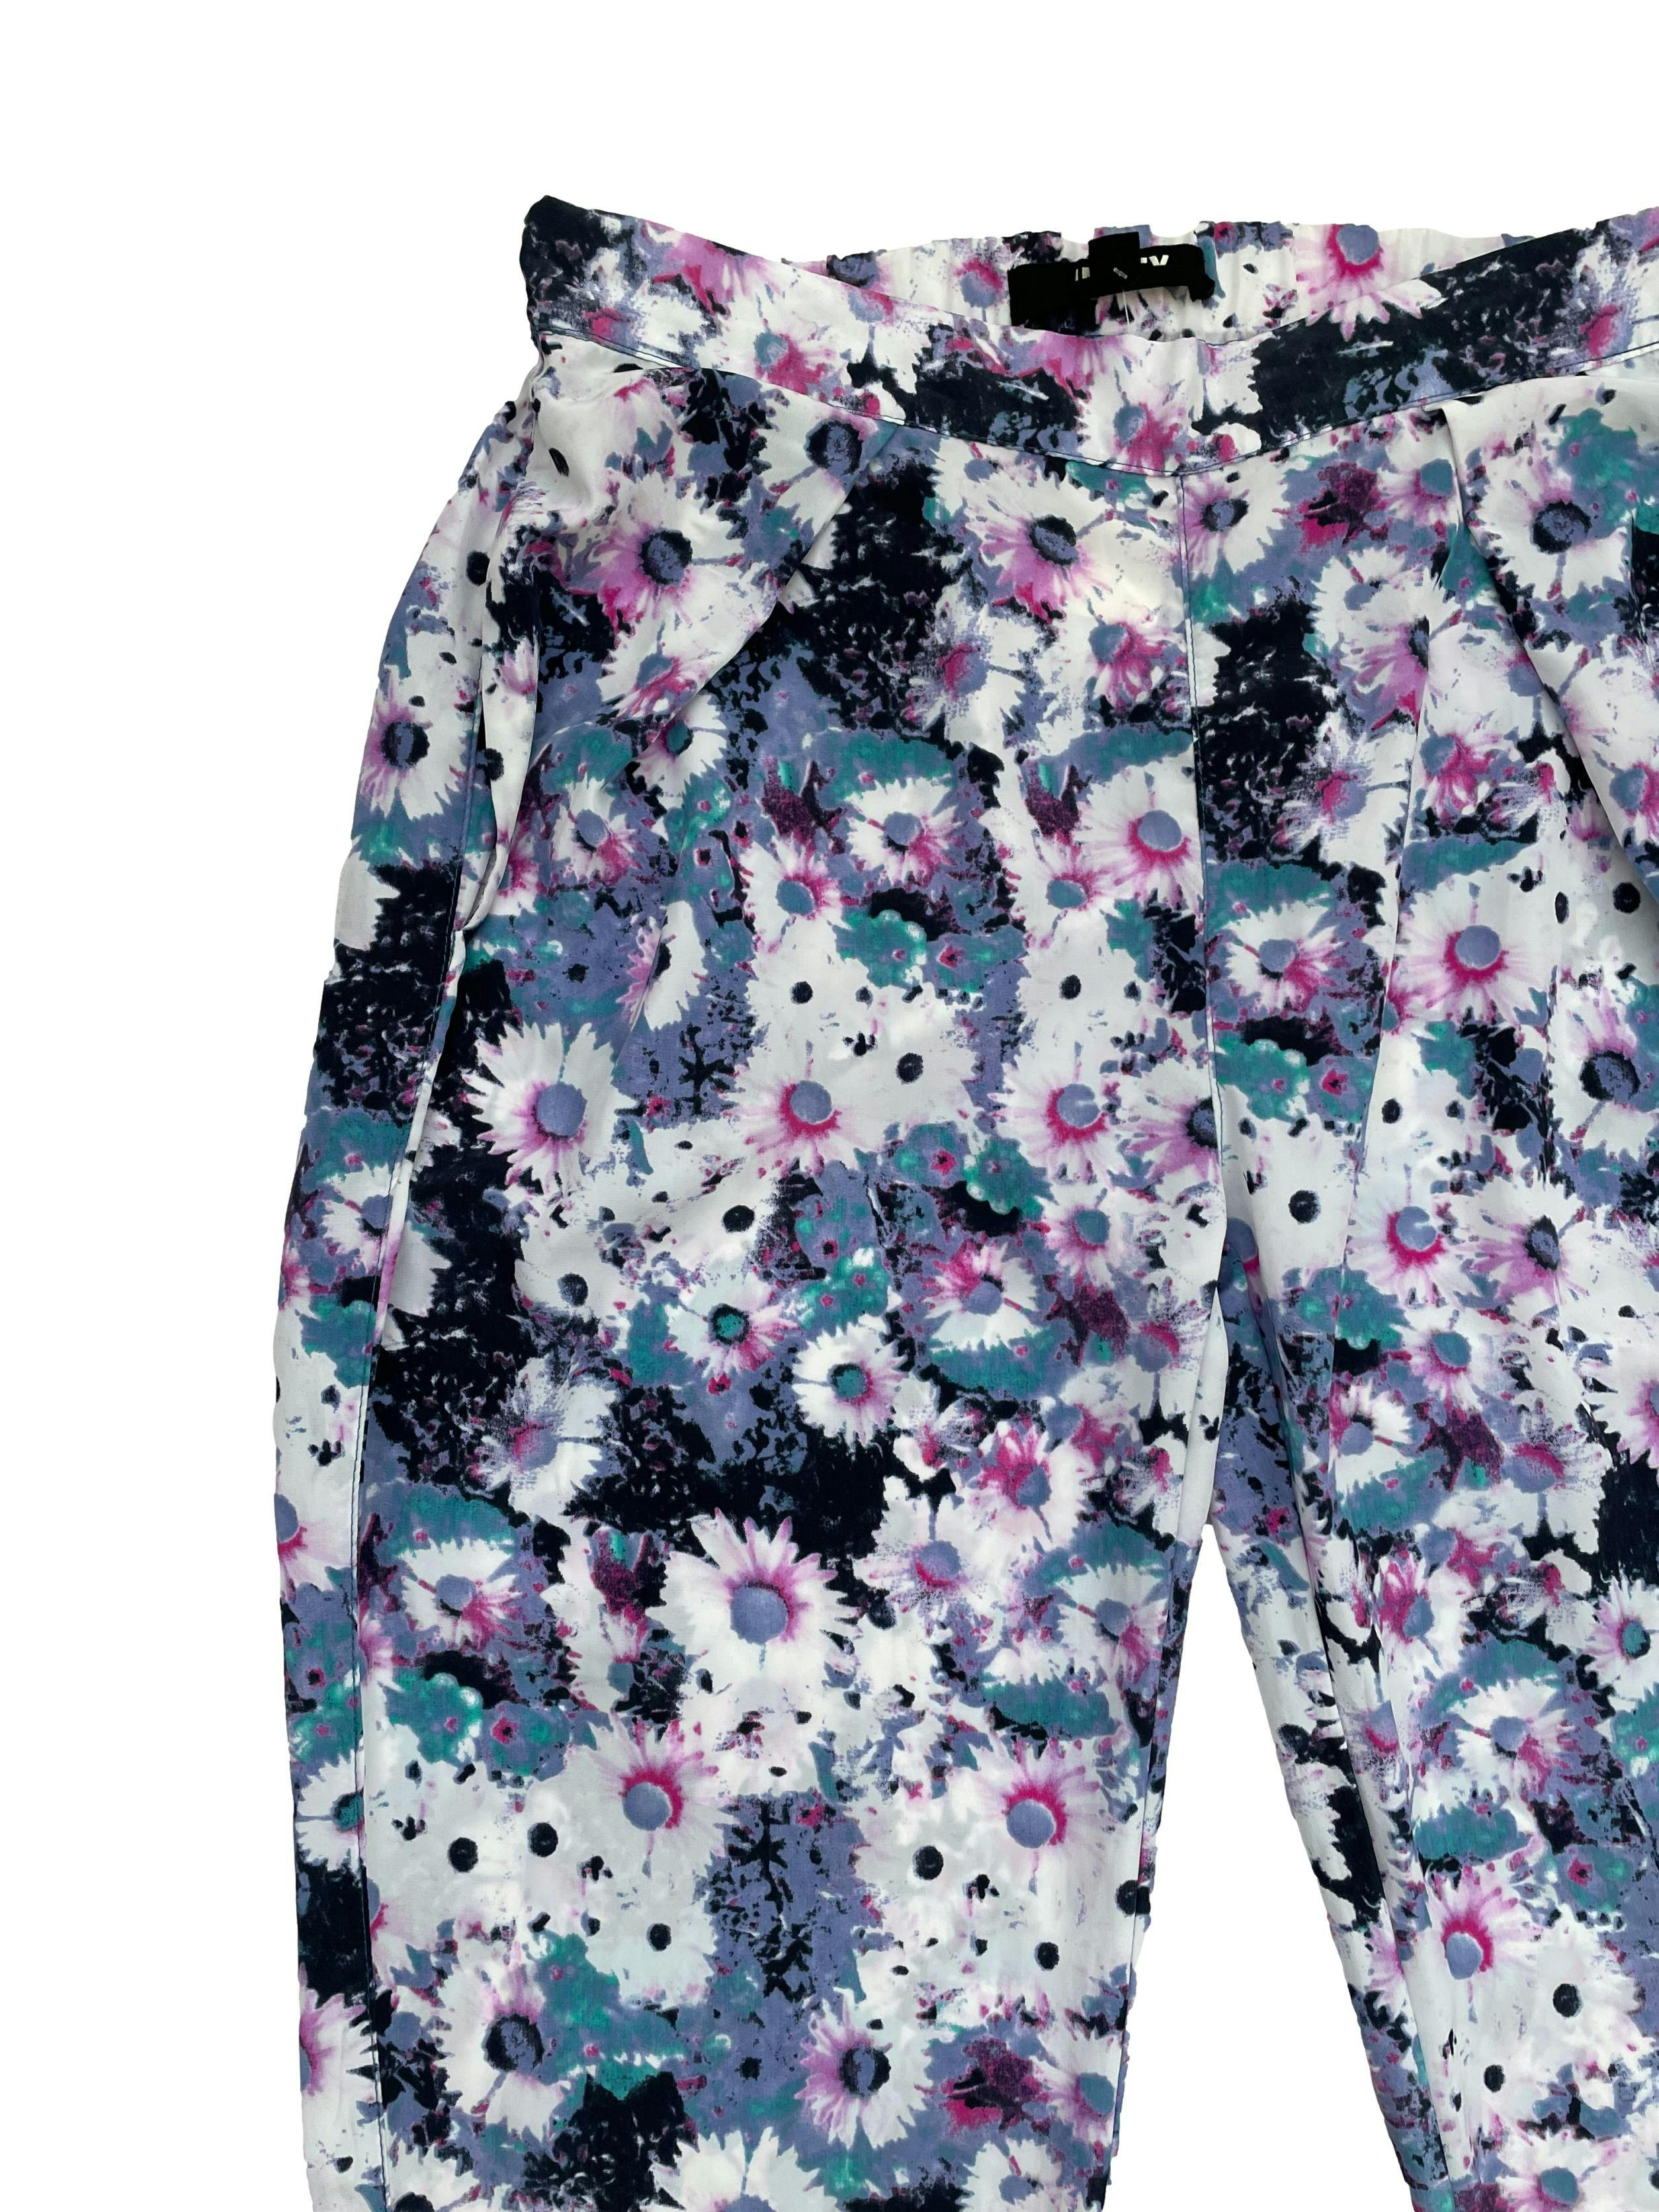 Pantalón Index con estampado floreado en tonos morados, lilas, azules, bolsillos delanteros y con elástico en la cintura y basta, tela plana fluida. Cintura 78cm sin estirar Largo 103cm